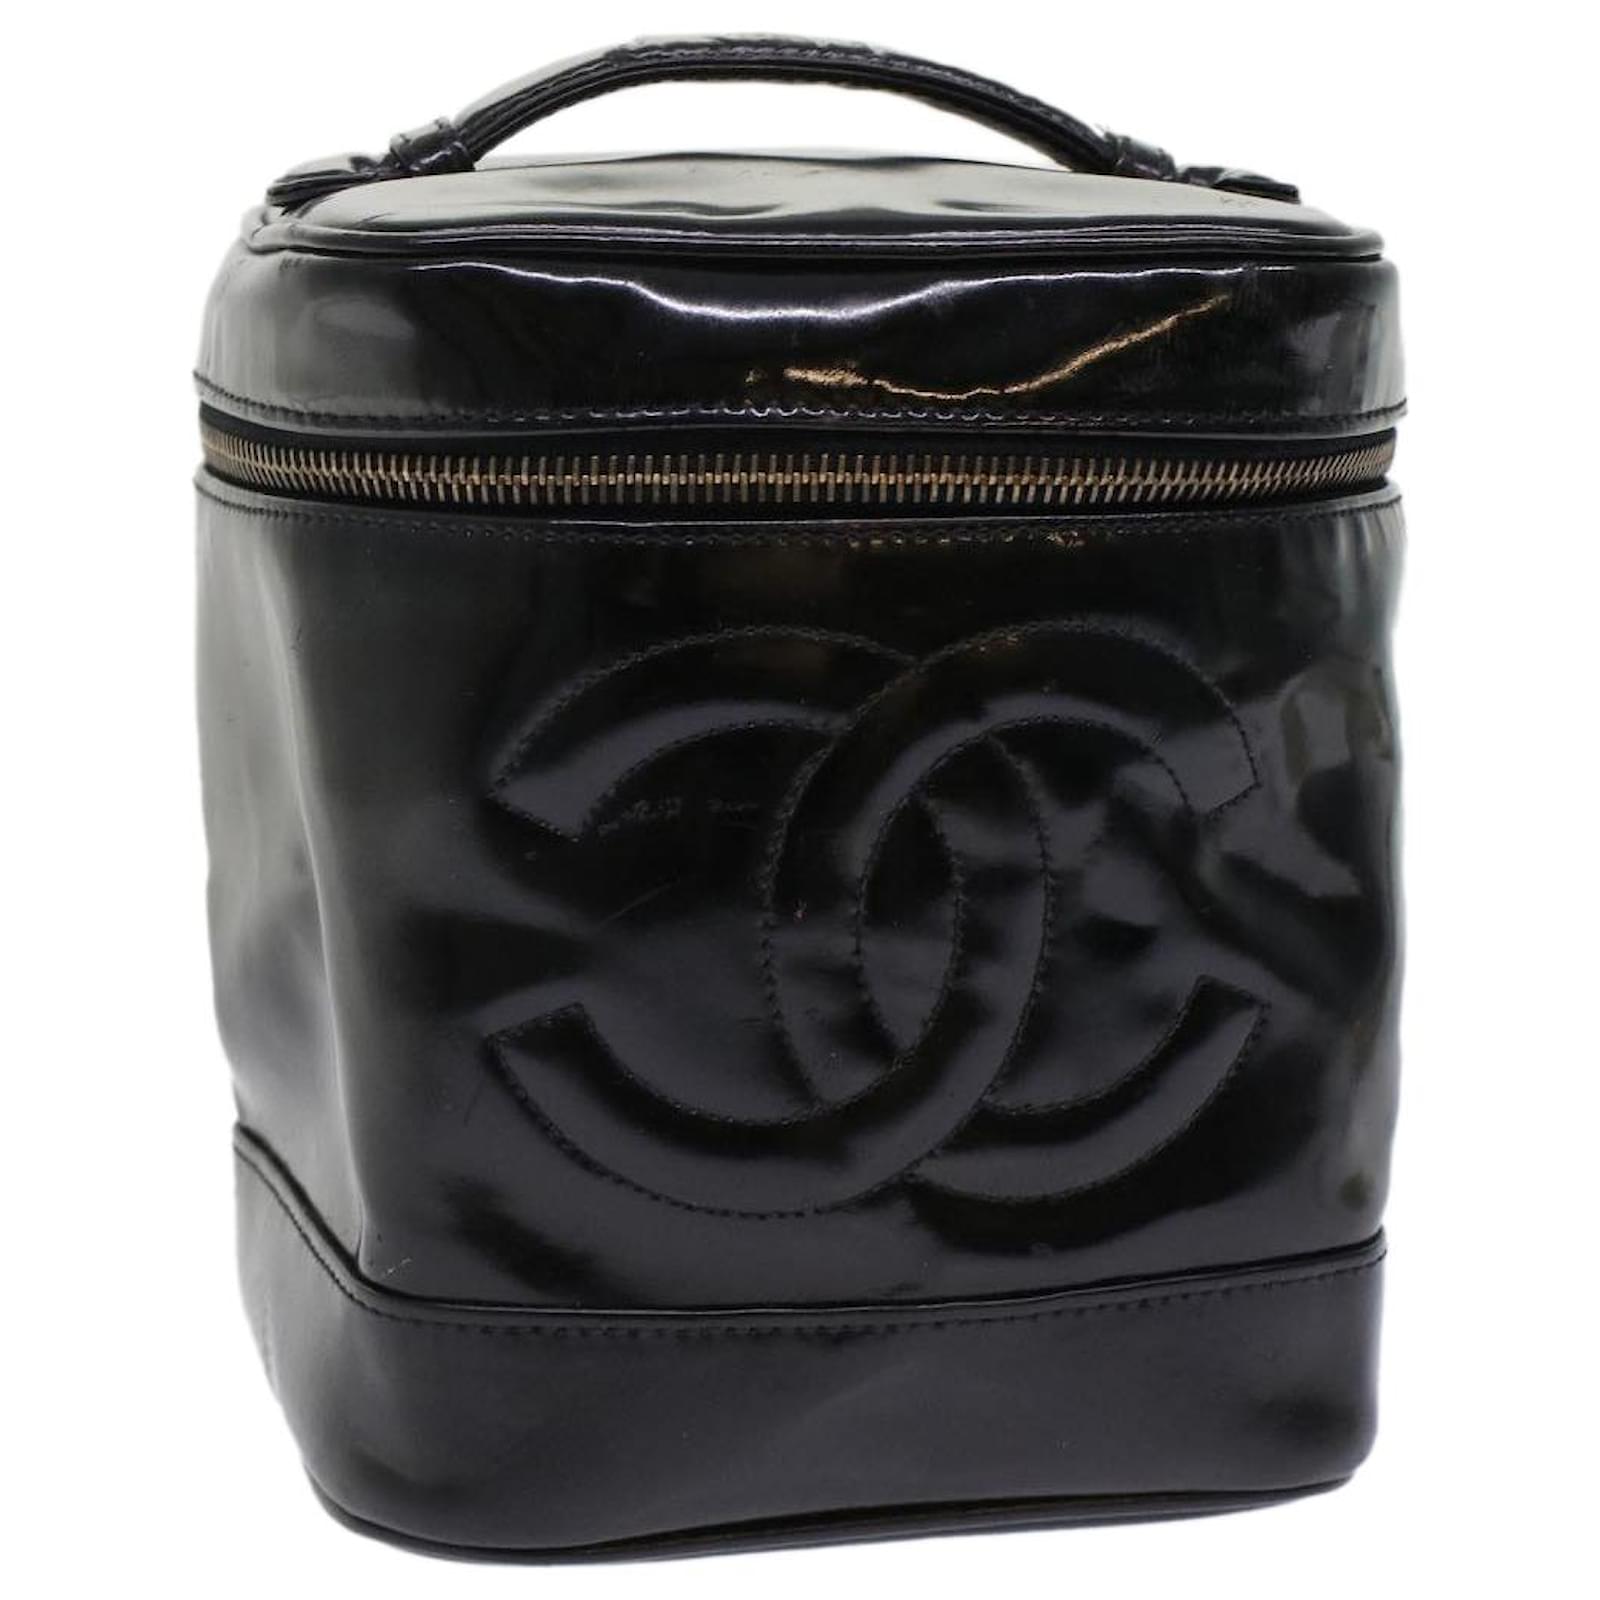 Black Chanel Matelasse Vanity Bag, AmaflightschoolShops Revival